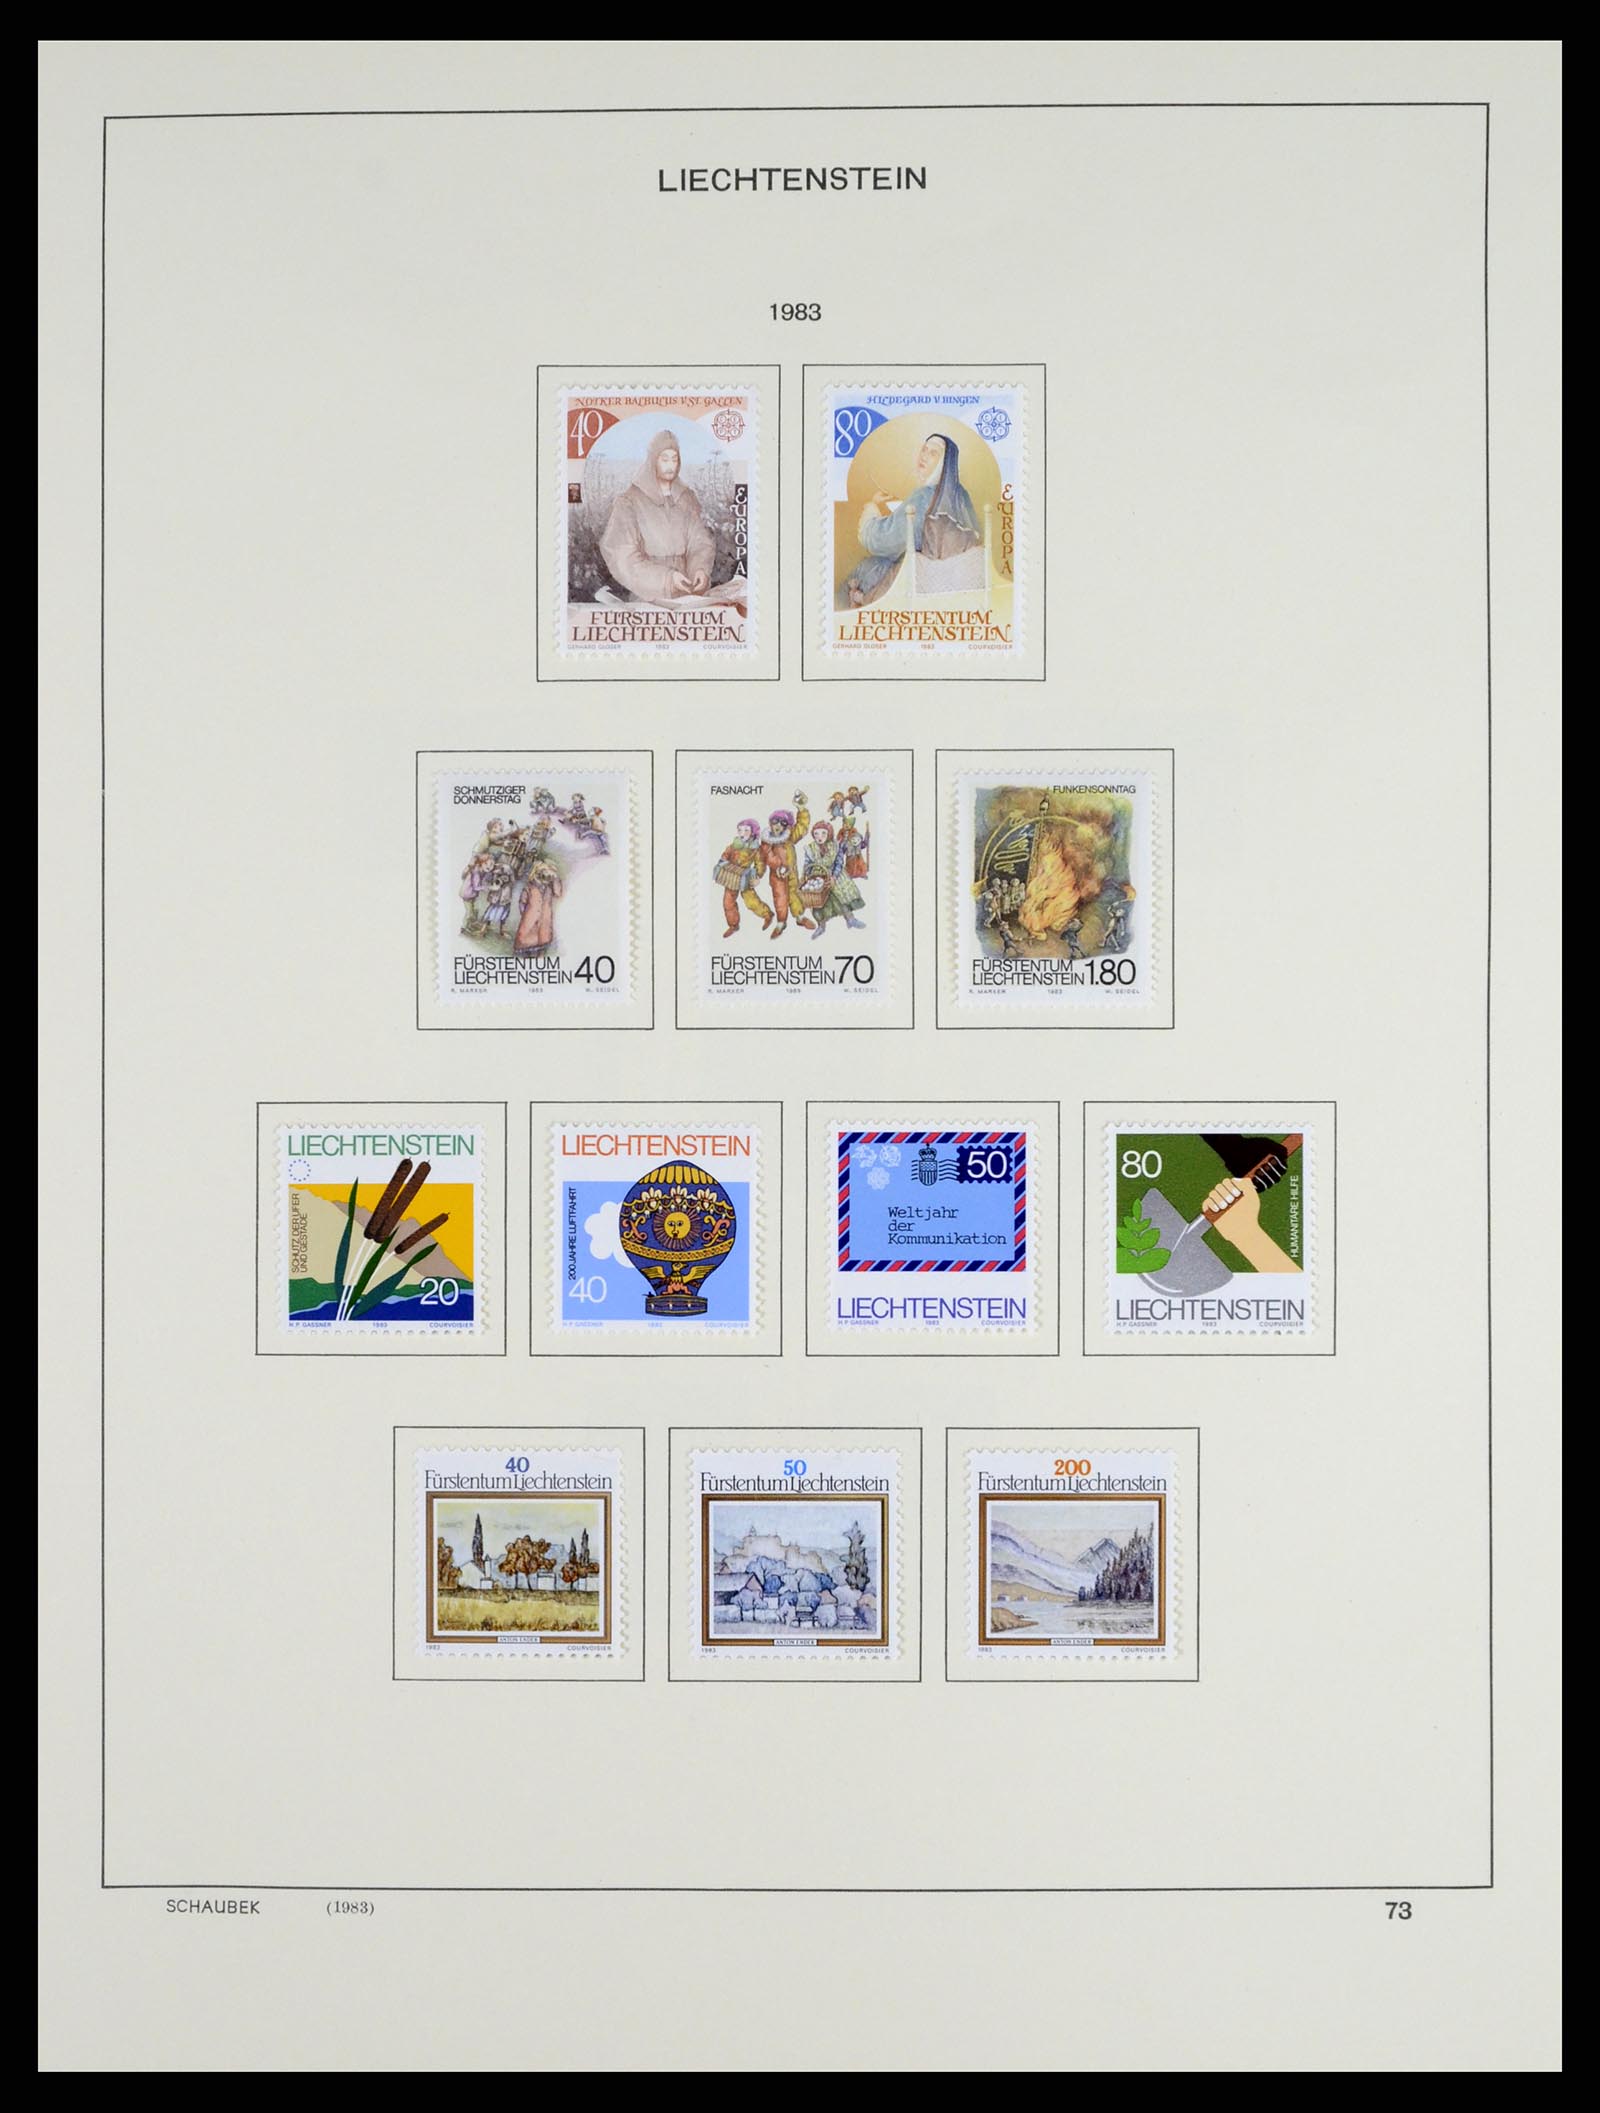 37547 088 - Stamp collection 37547 Liechtenstein 1912-2011.